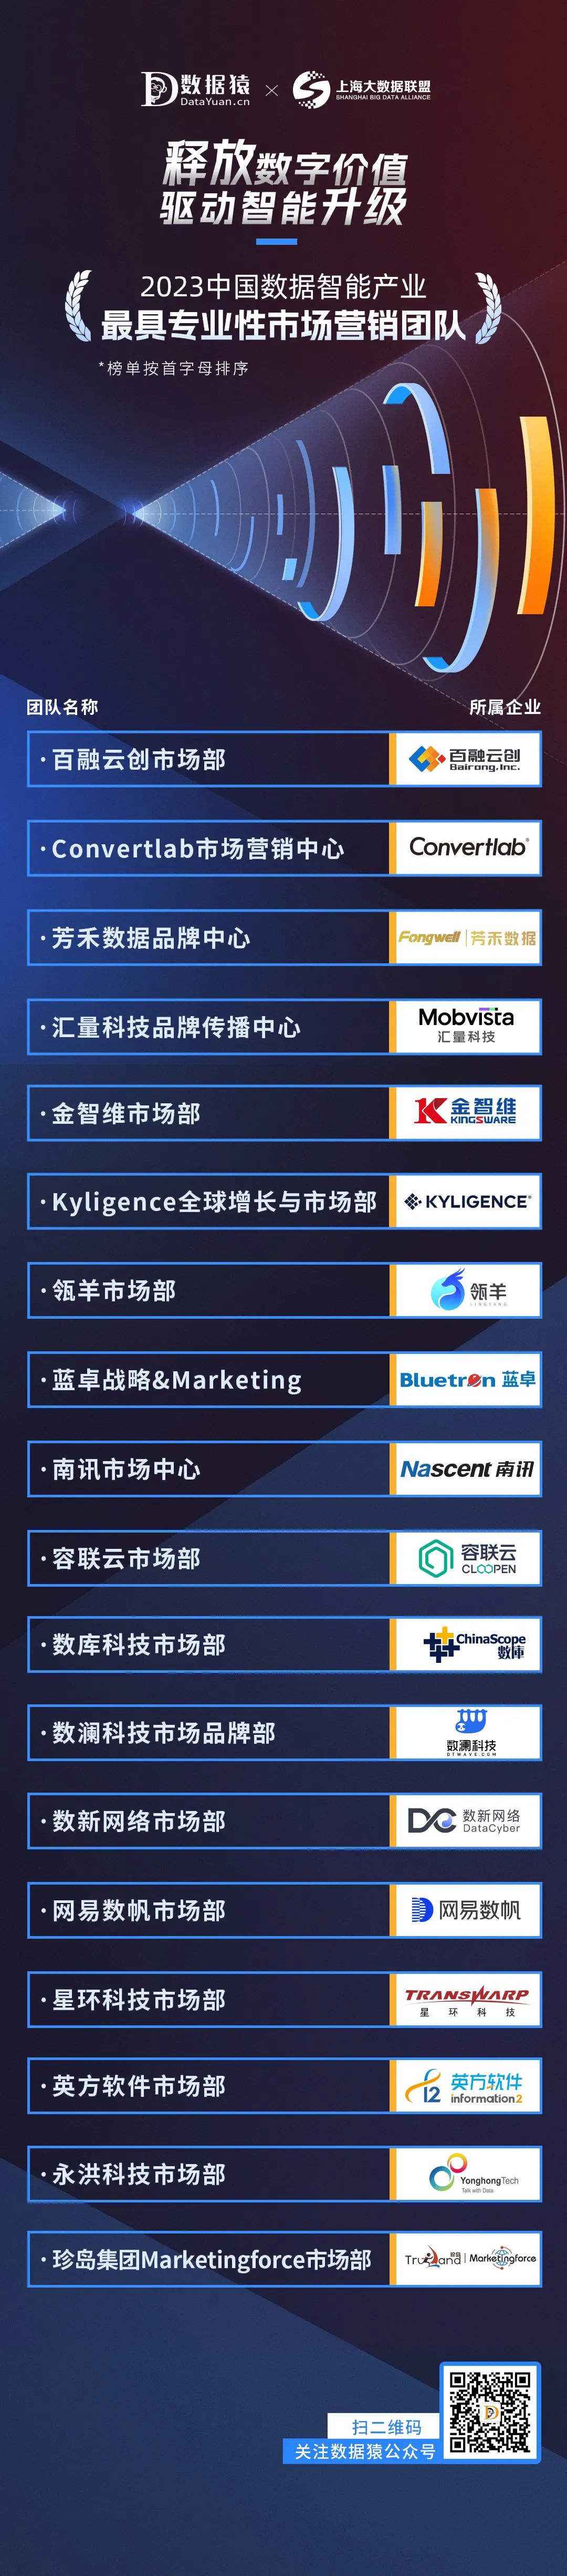 2023_中国数据智能产业_最具专业性市场营销团队-2